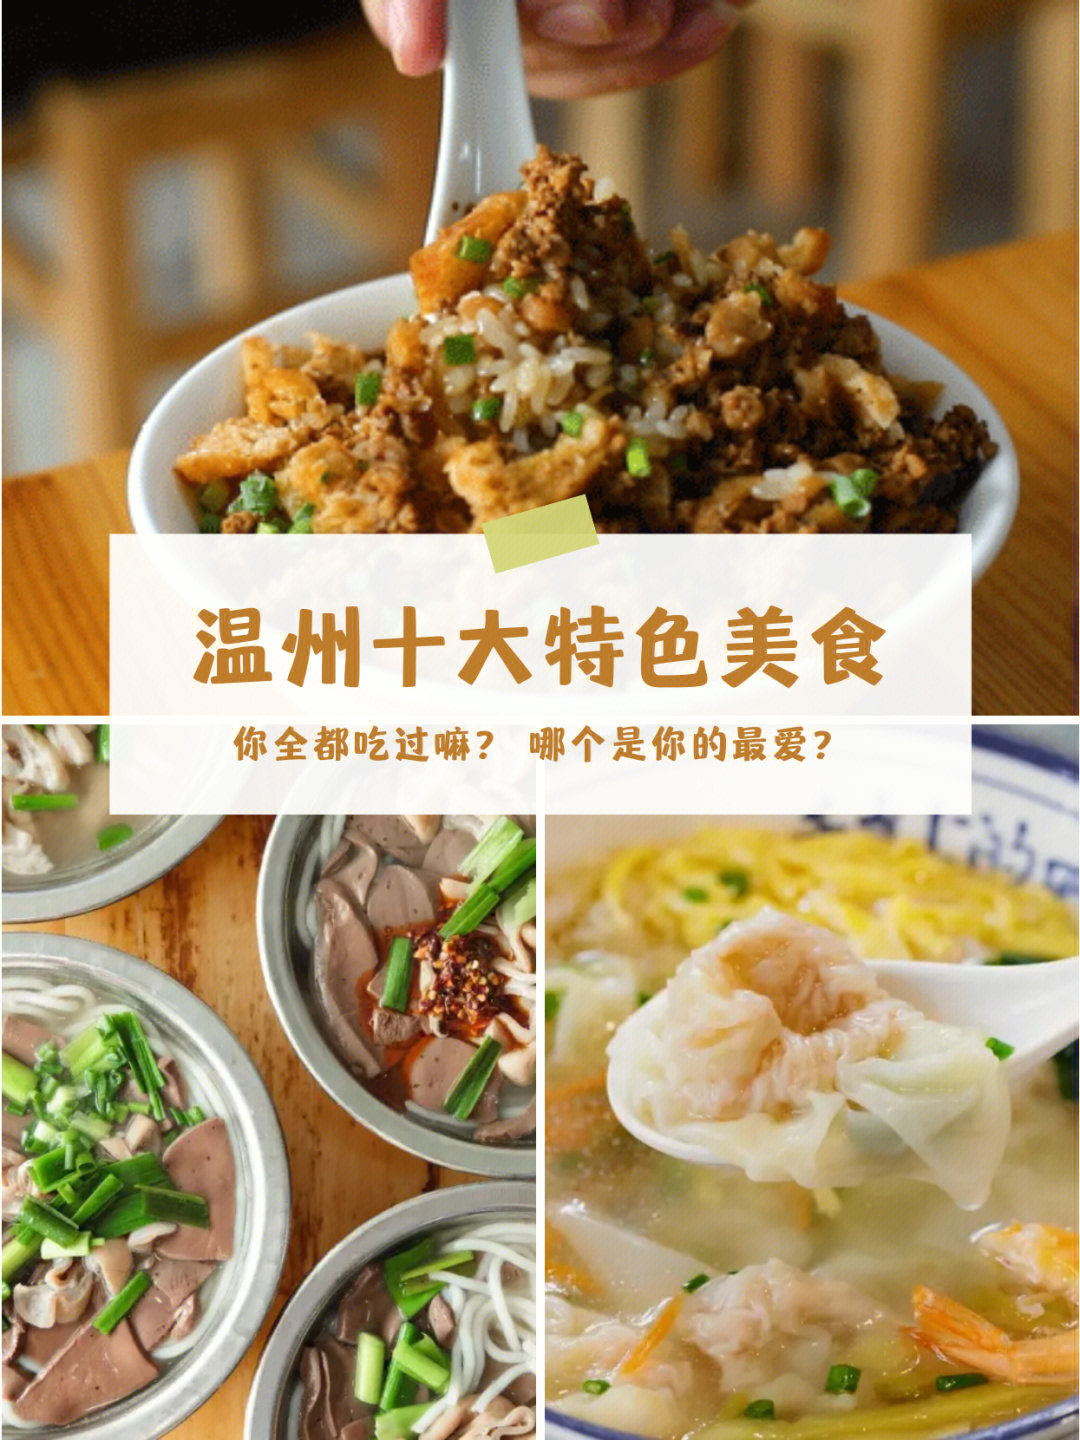 66温州鱼丸温州鱼丸是浙江温州的一道名吃,也被列入了中华名小吃